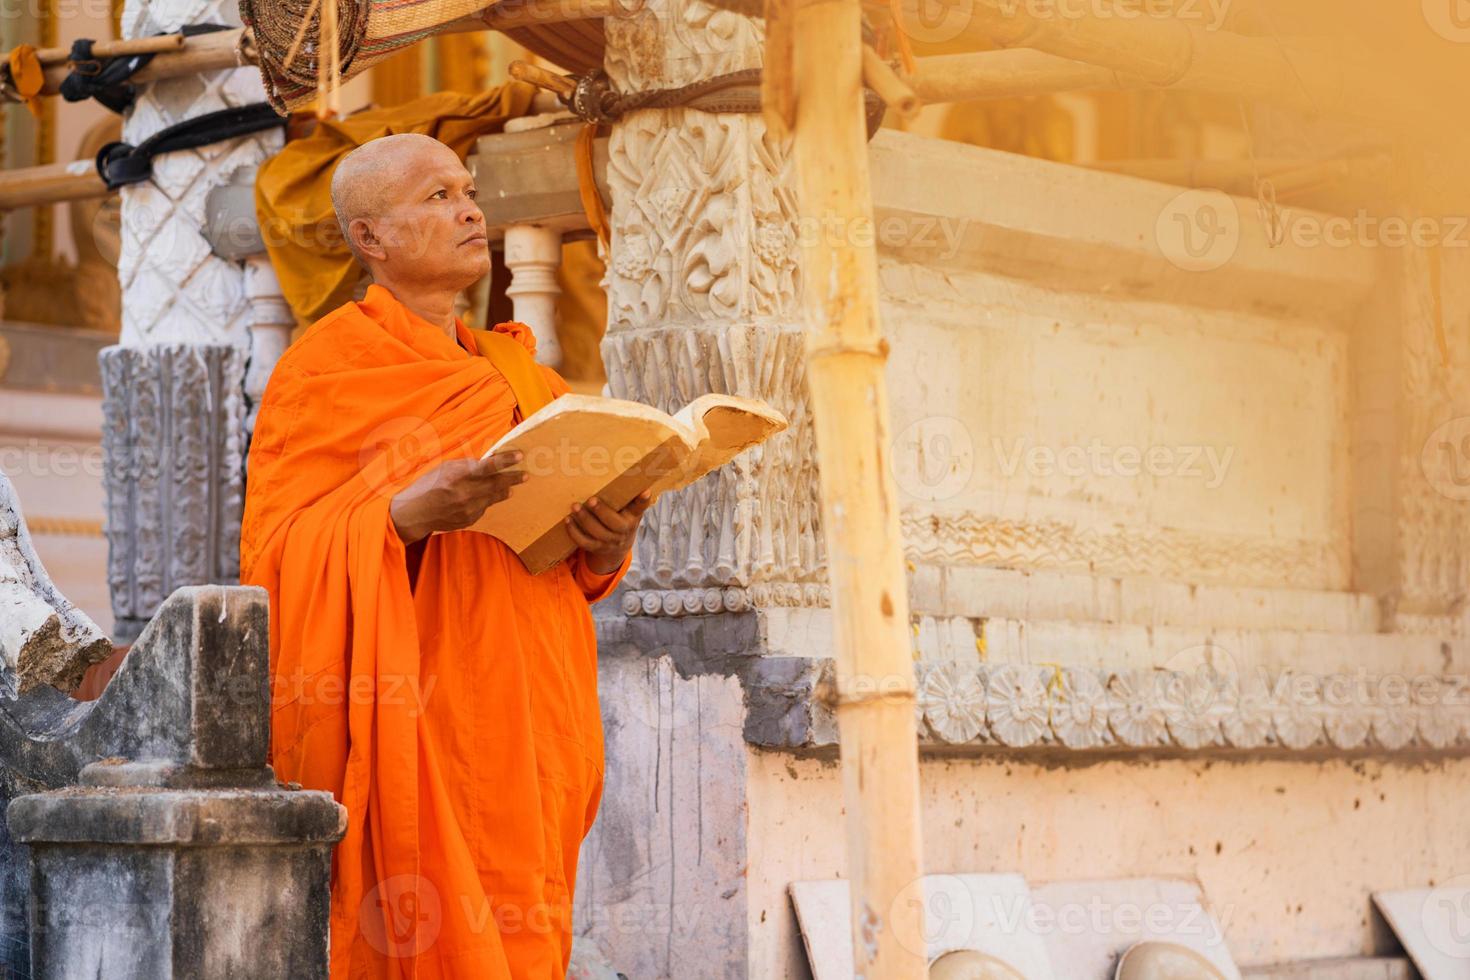 Mönche in Thailand lesen Bücher foto